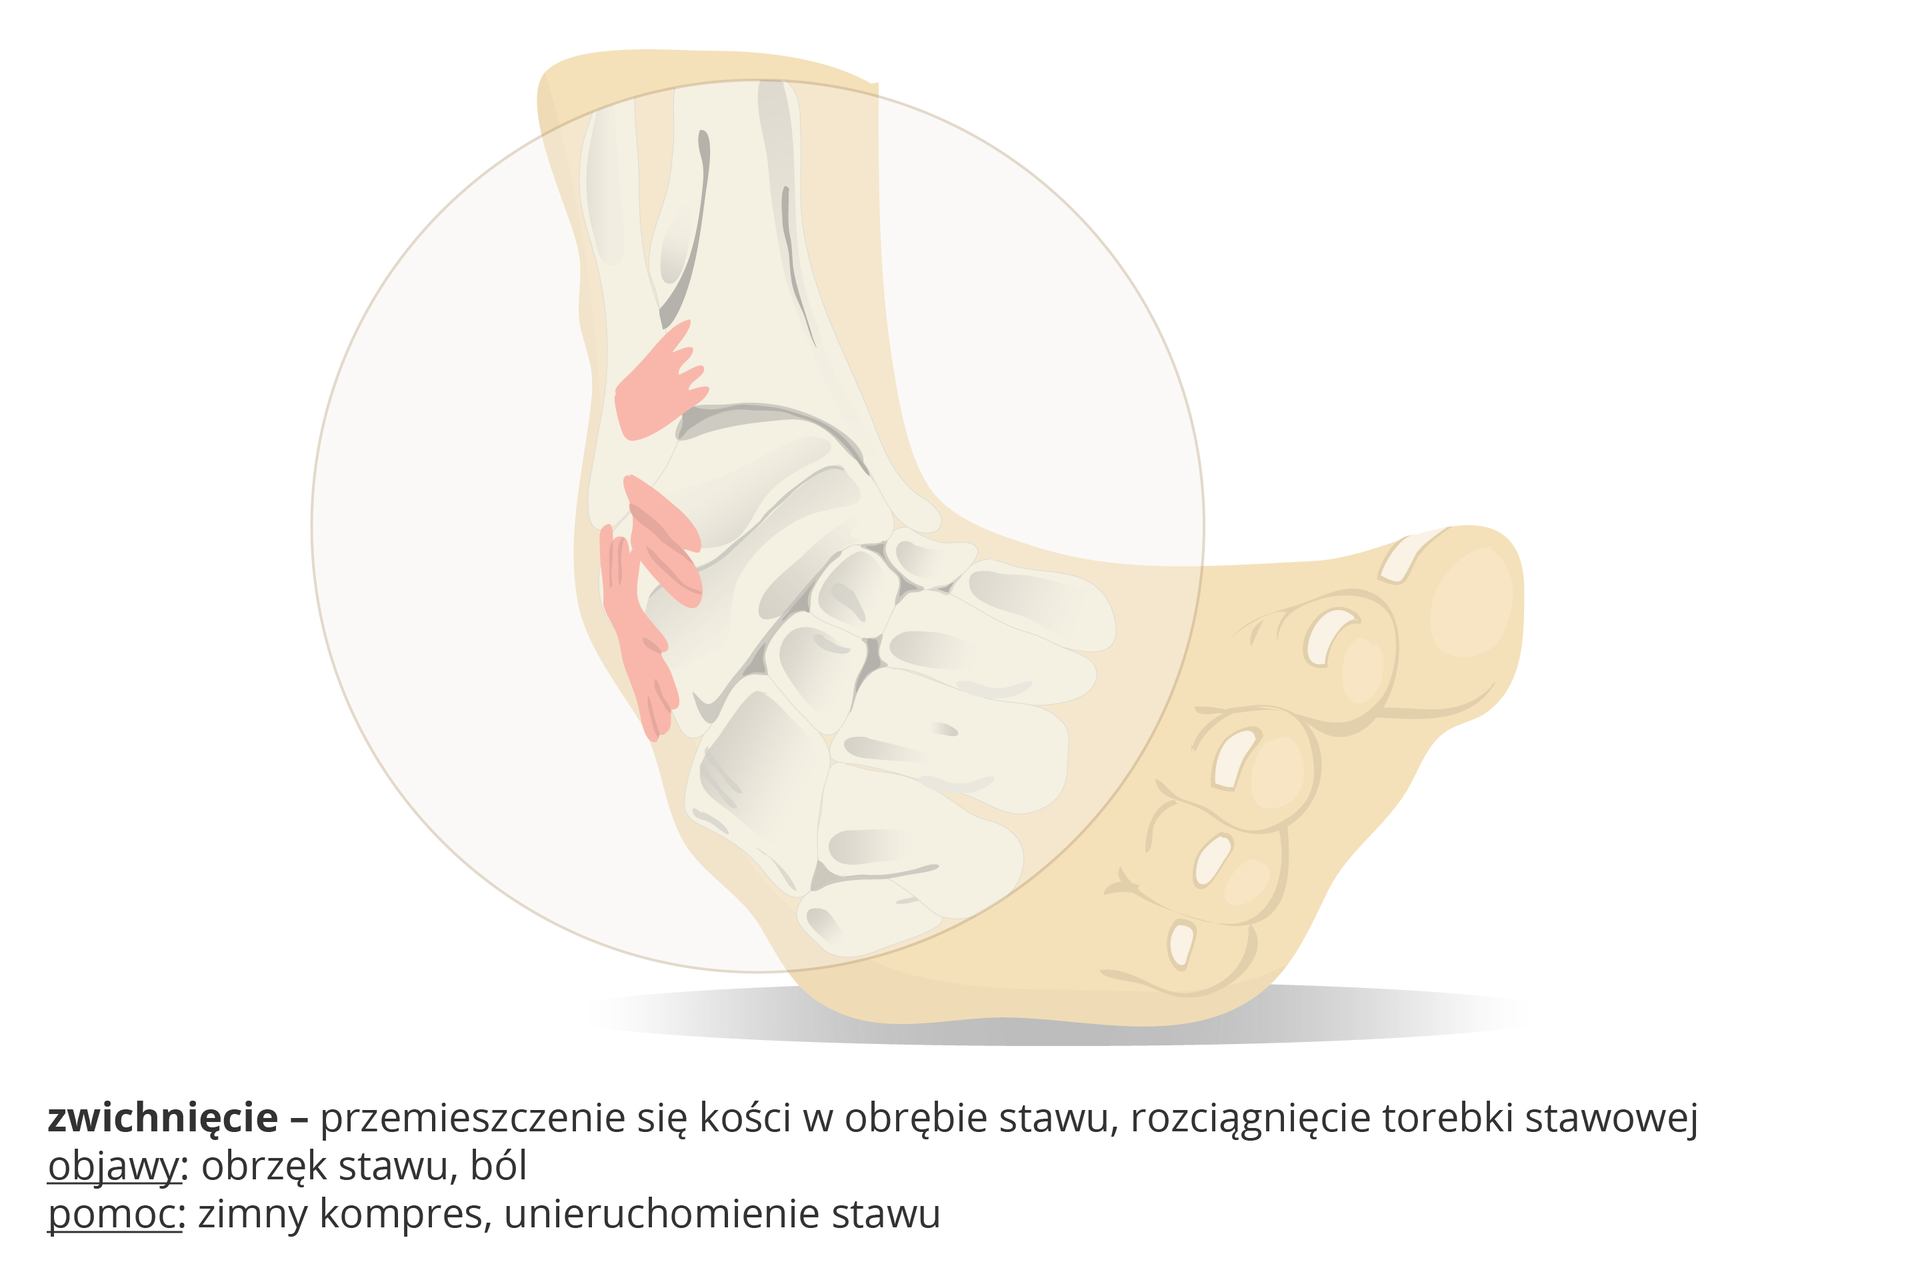 Ilustracja przedstawia schematycznie nienaturalnie wygiętą stopę, kółkiem zaznaczono obszar zwichnięcia, czyli przemieszczenia kości w stawie i naciągnięcia torebki stawowej. Objawy: obrzęk stawu, ból. Pomoc: zimny kompres, unieruchomienie stawu.